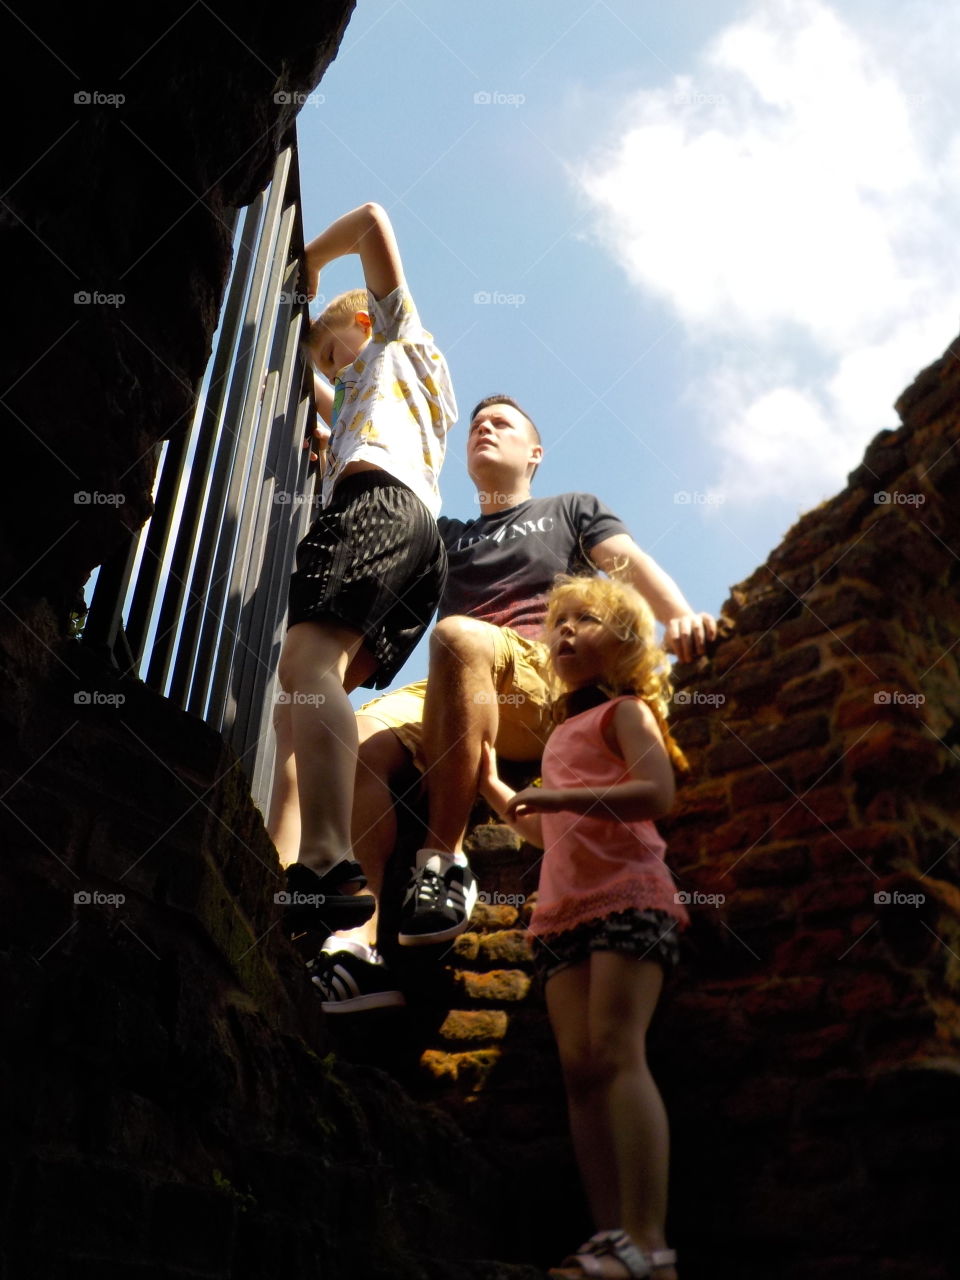 The heights in Kirby Muxloe castle 🇬🇧